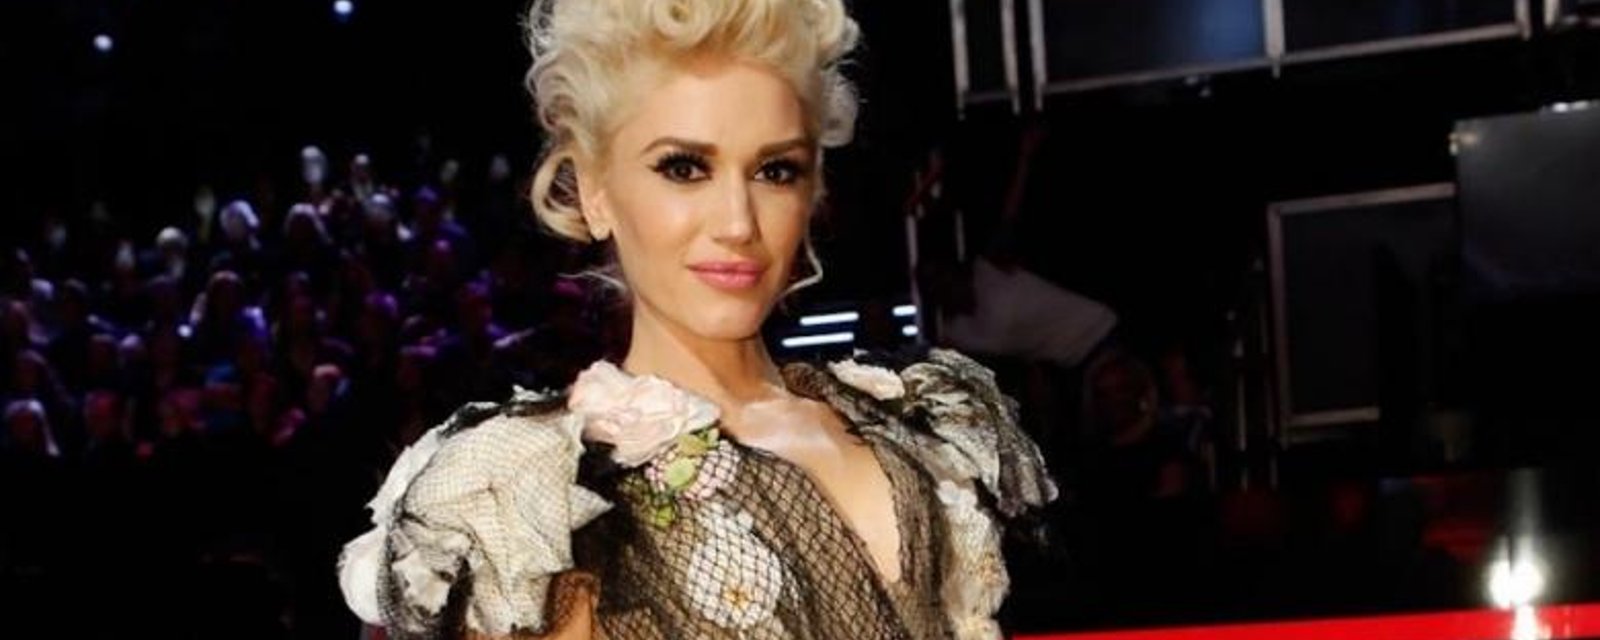 Gwen Stefani partage une photo d'elle sans maquillage...